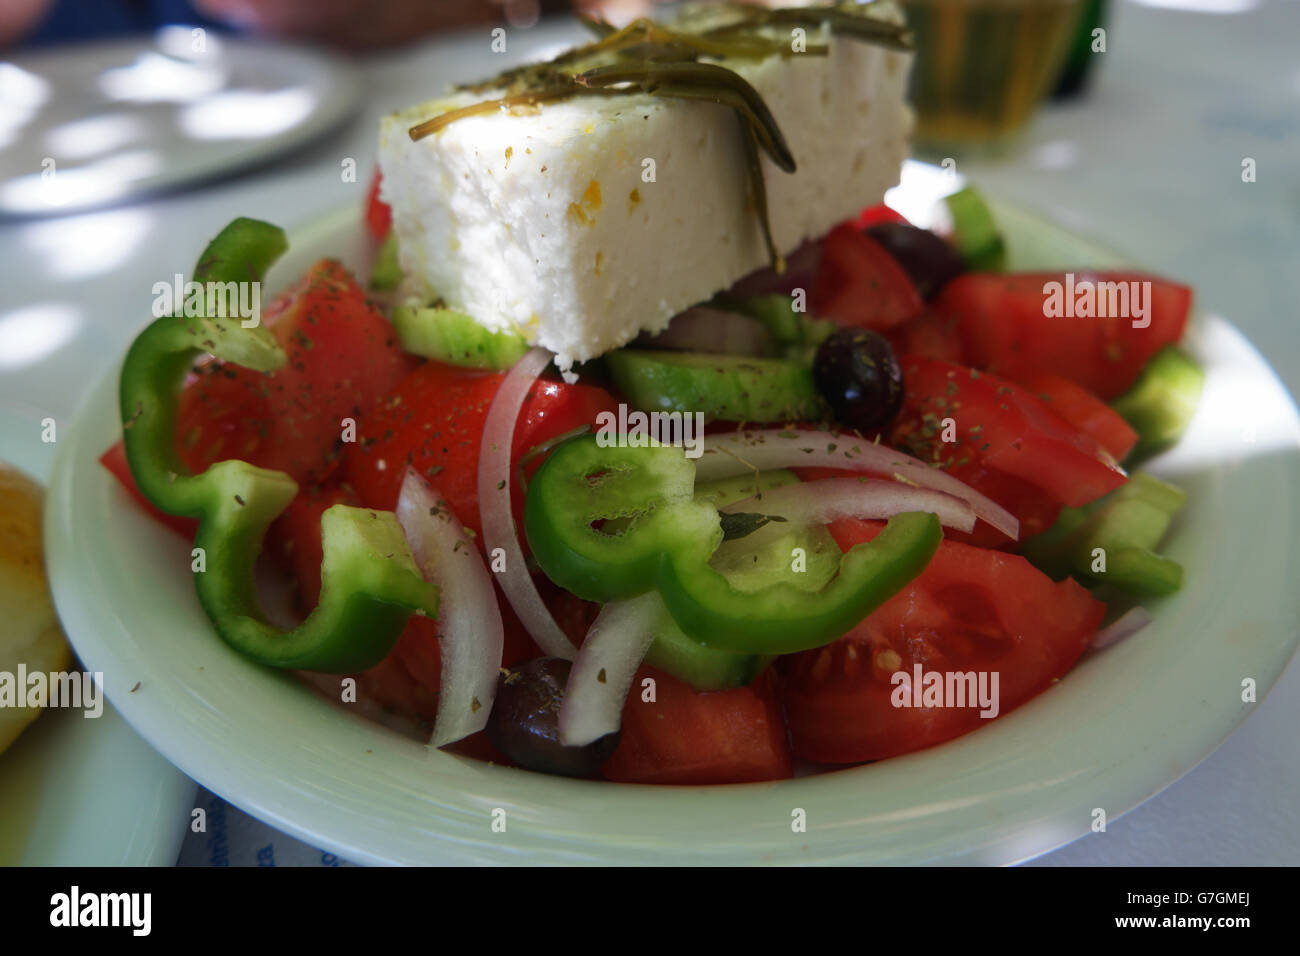 Insalata greca con formaggio Feta, girato in una taverna greca. Foto Stock